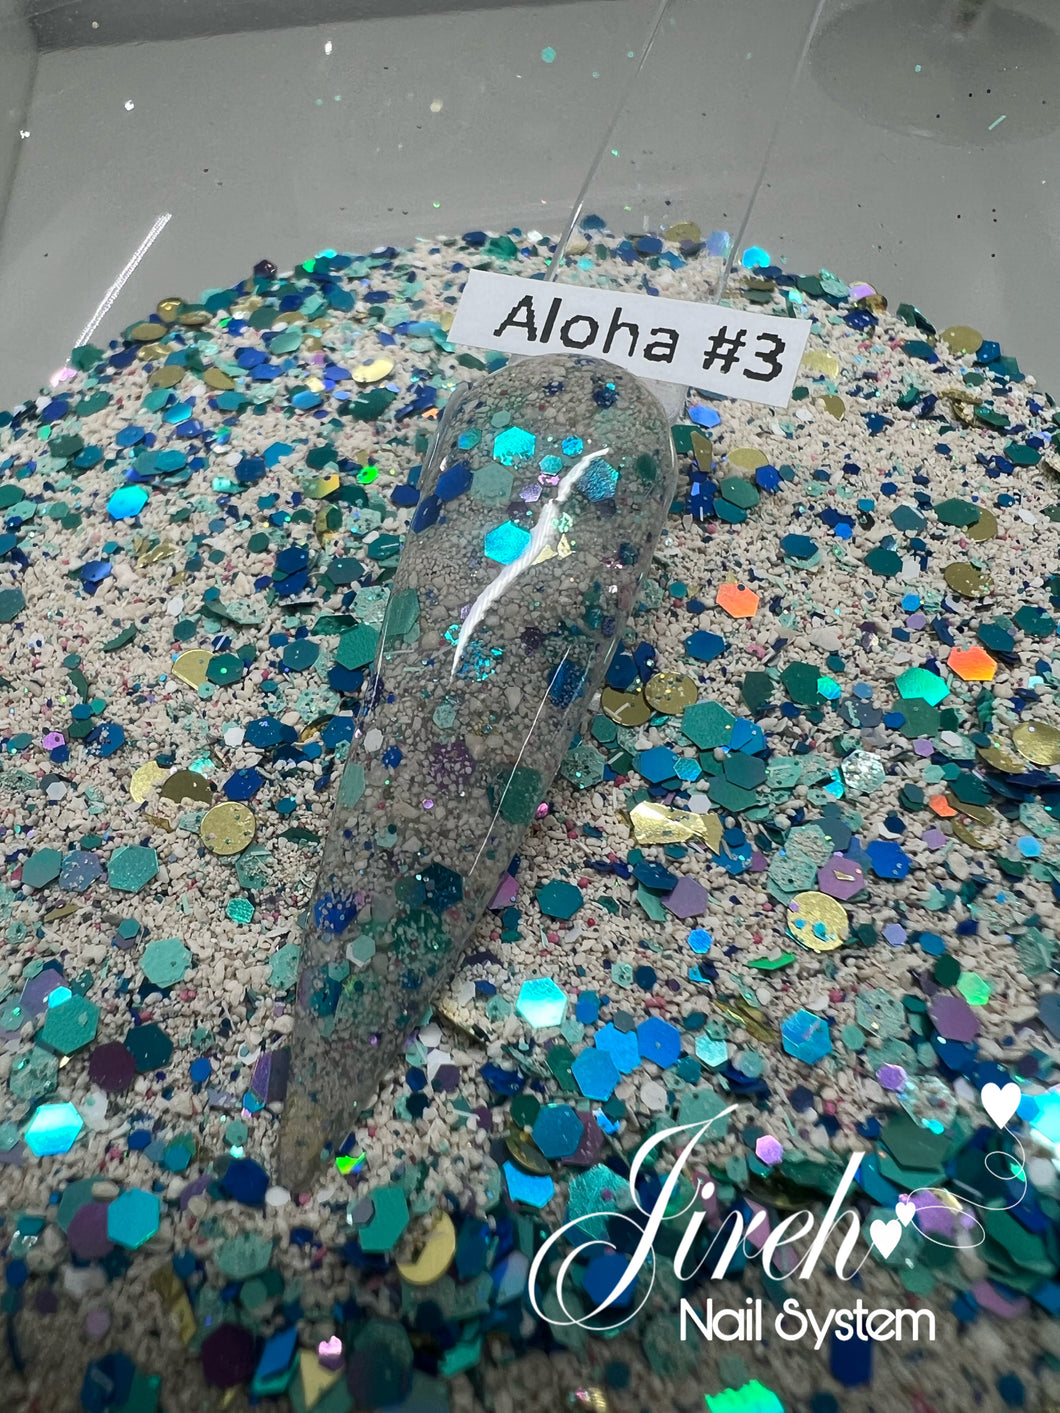 Aloha #3